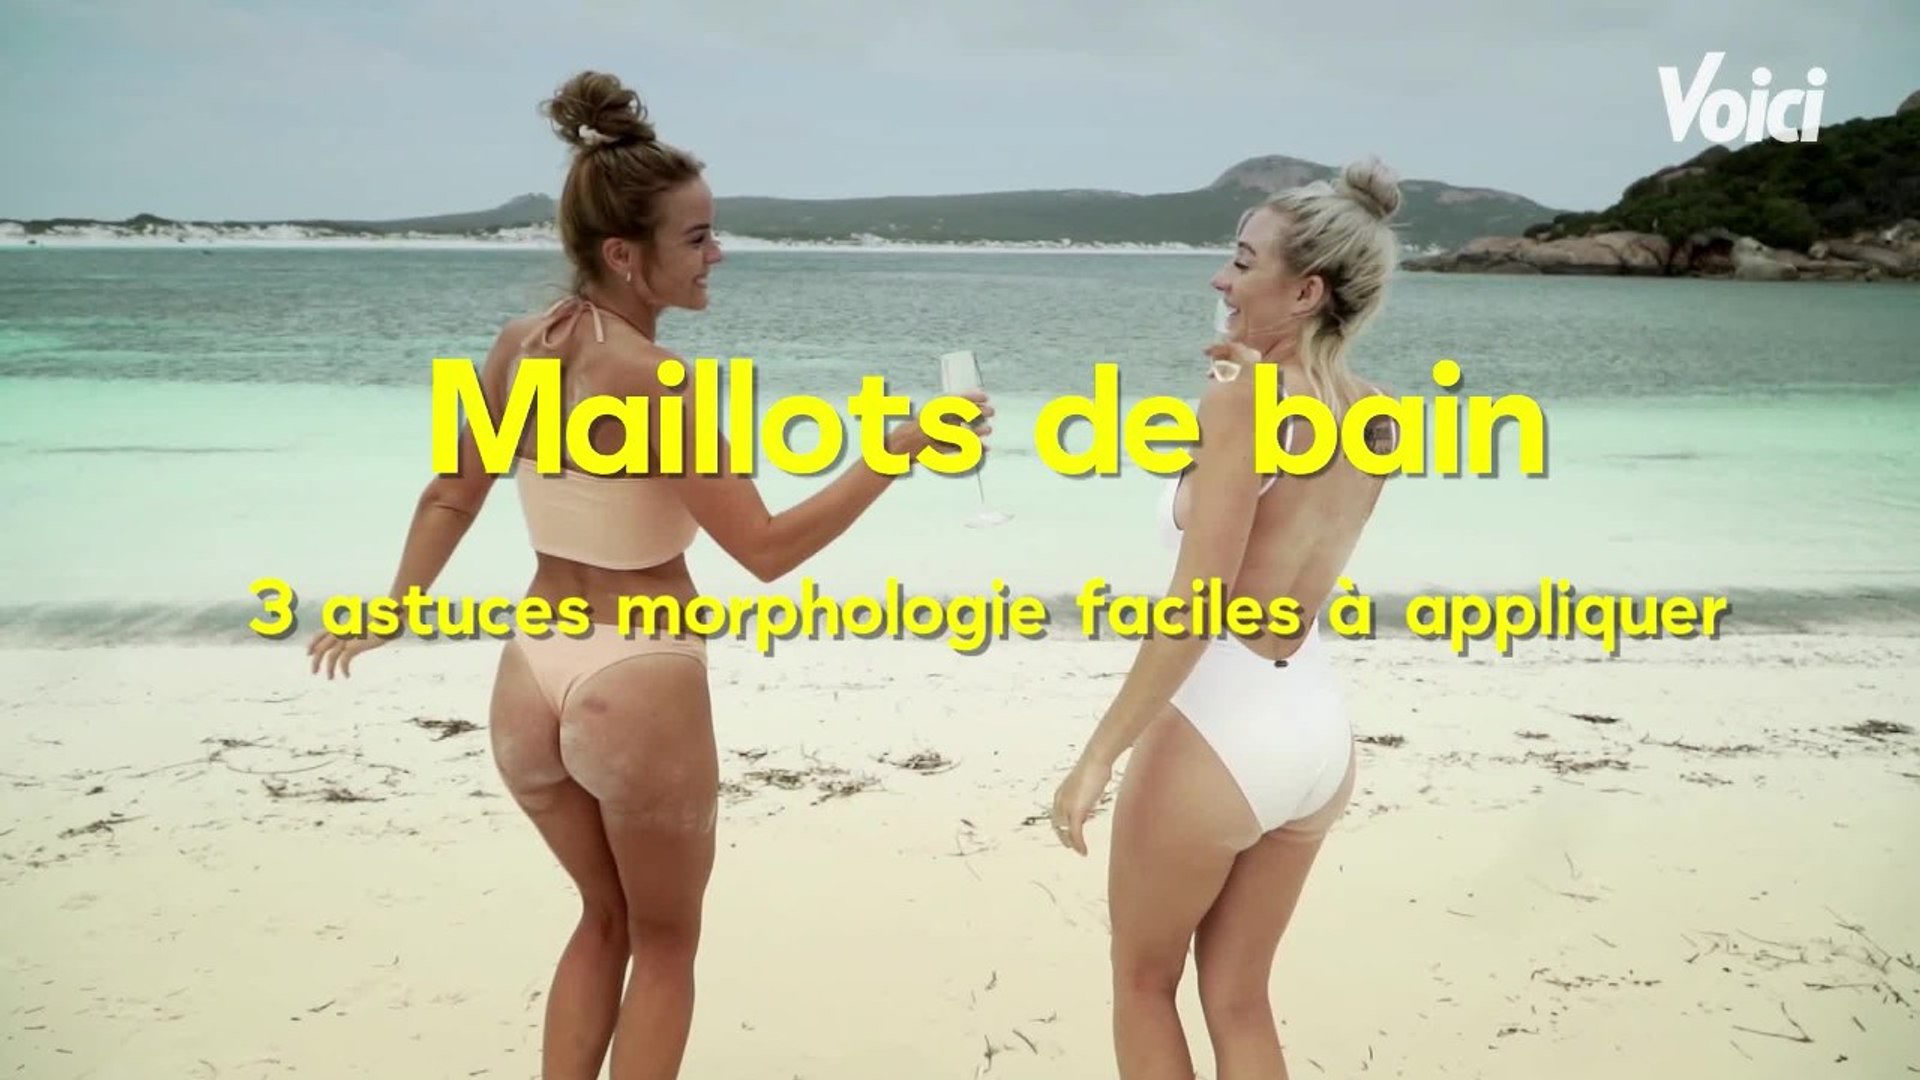 VOICI : Mode : 3 astuces morphologie pour les maillots de bain - Vidéo  Dailymotion